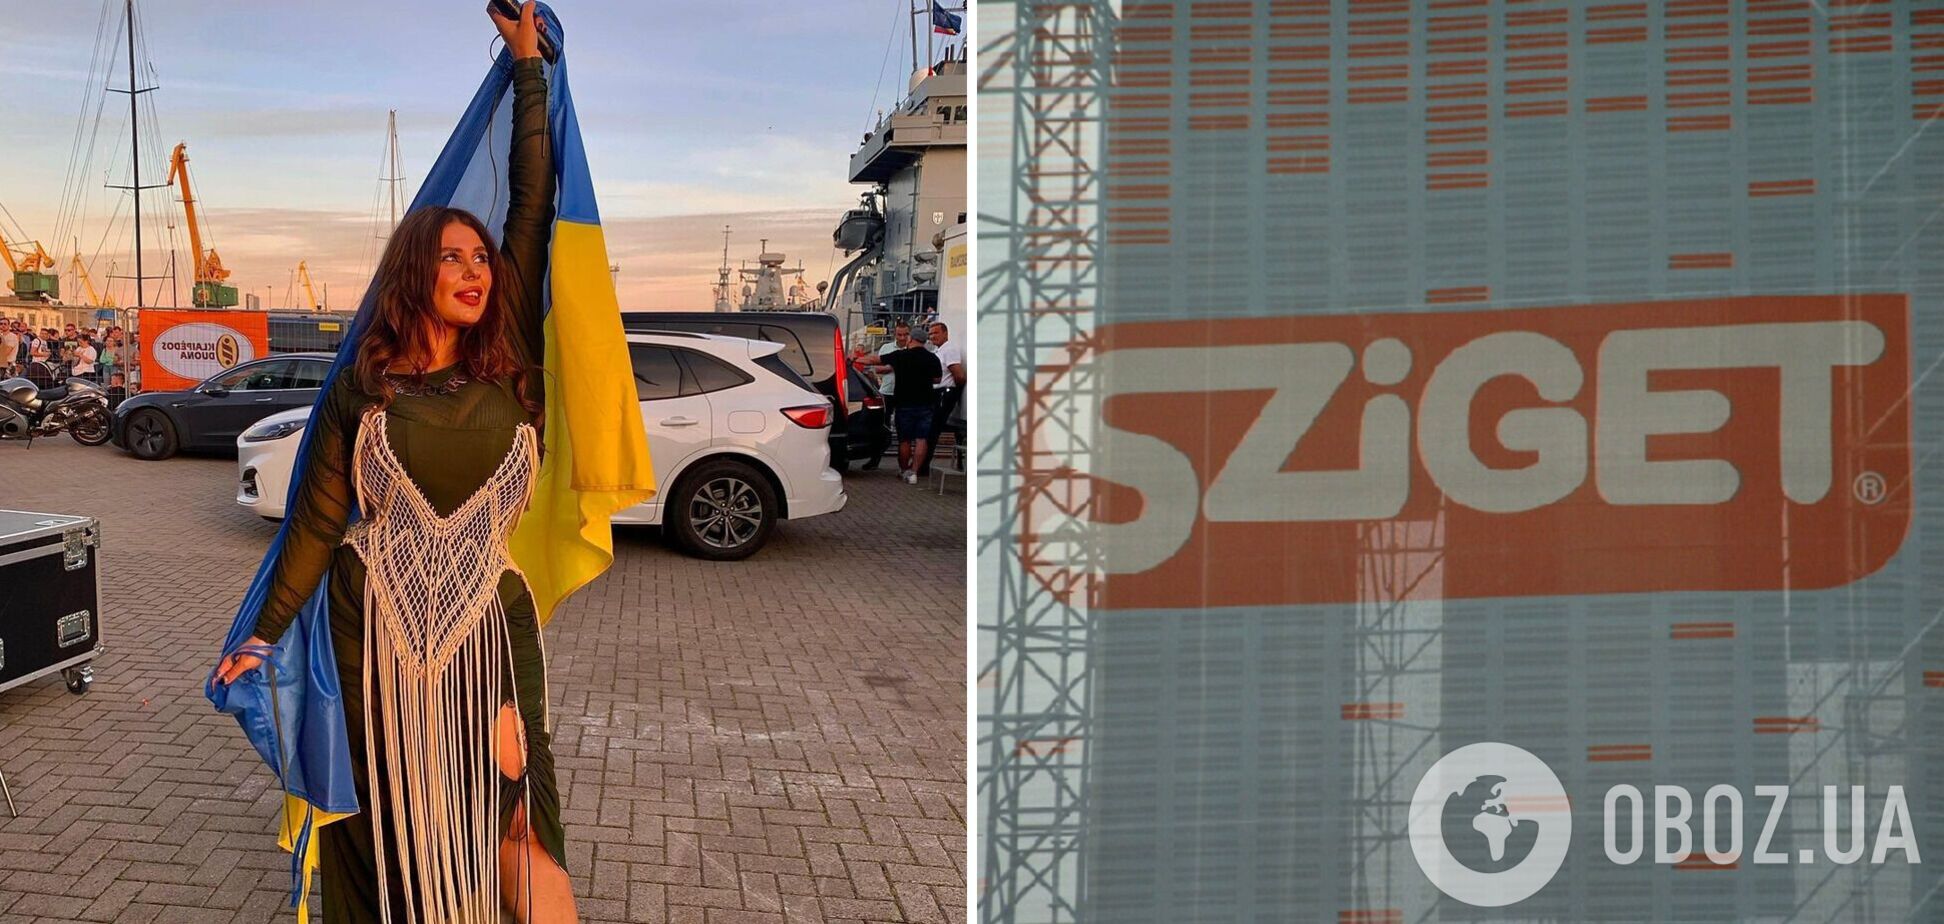 Солистка группы KAZKA назвала украинцев 'бездумным стадом' и объяснила, почему едет на Sziget